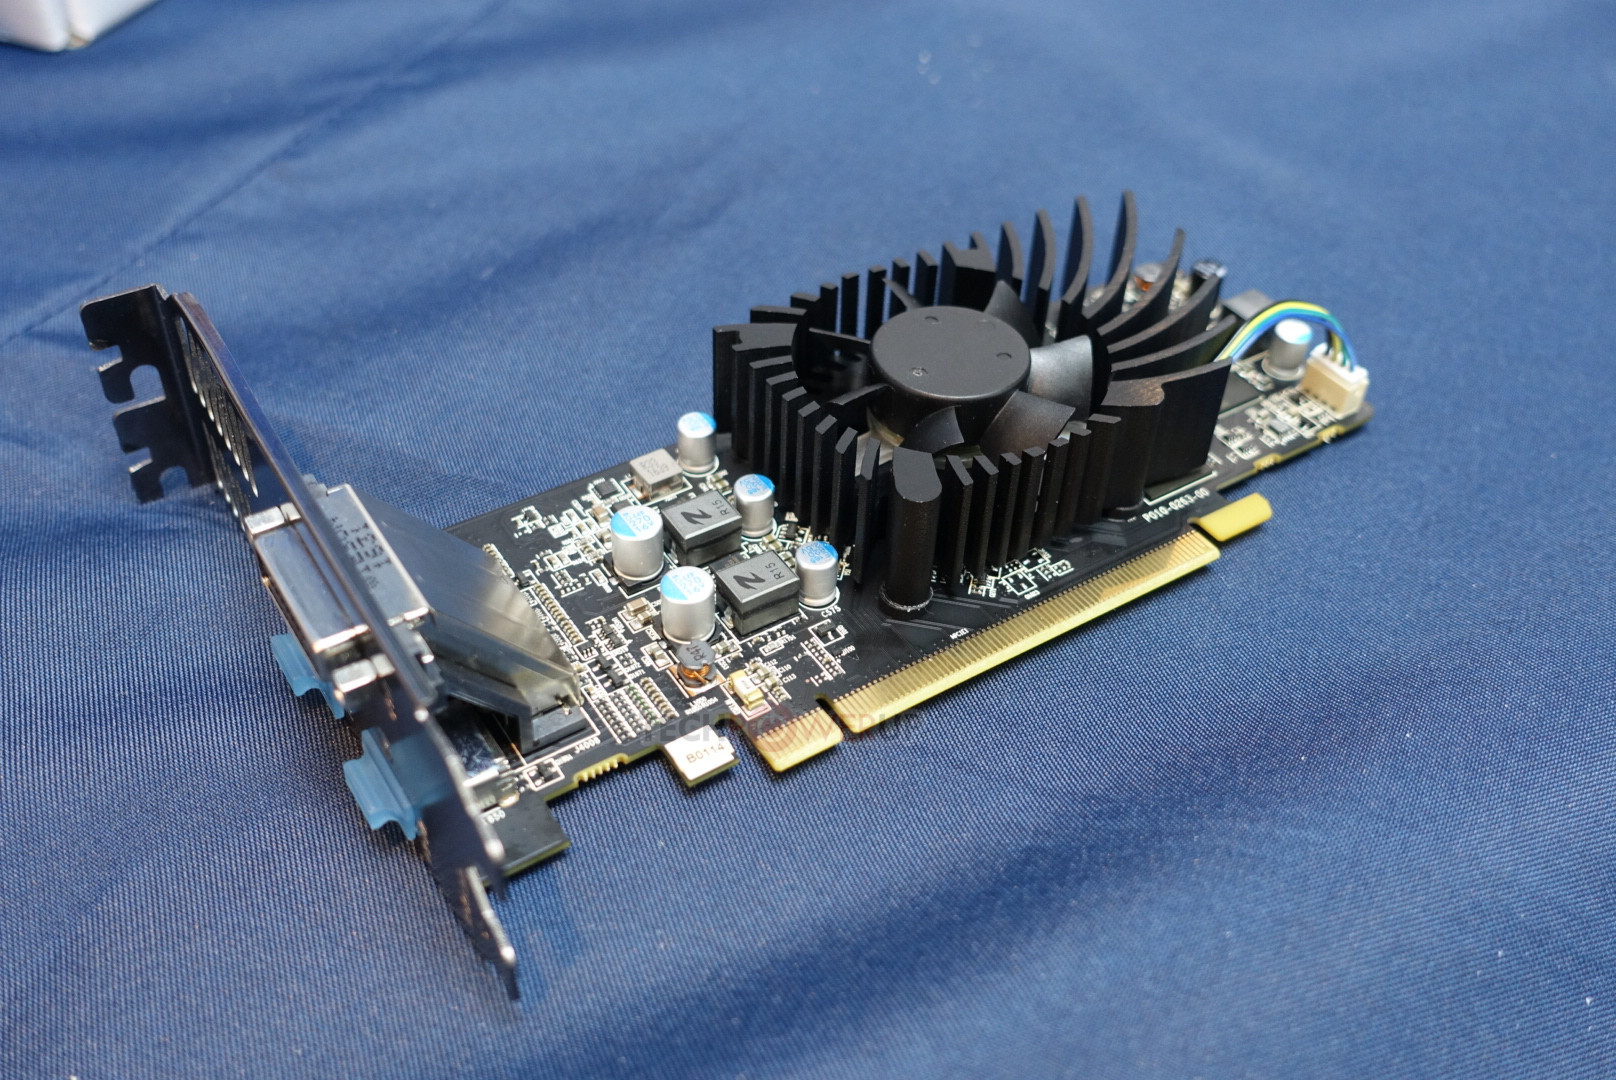 Immagine pubblicata in relazione al seguente contenuto: Sapphire presenta una video card Radeon RX 550 con connettore di uscita DVI-I | Nome immagine: news26428_Sapphire-Radeon-RX-550-DVI-I_1.jpg